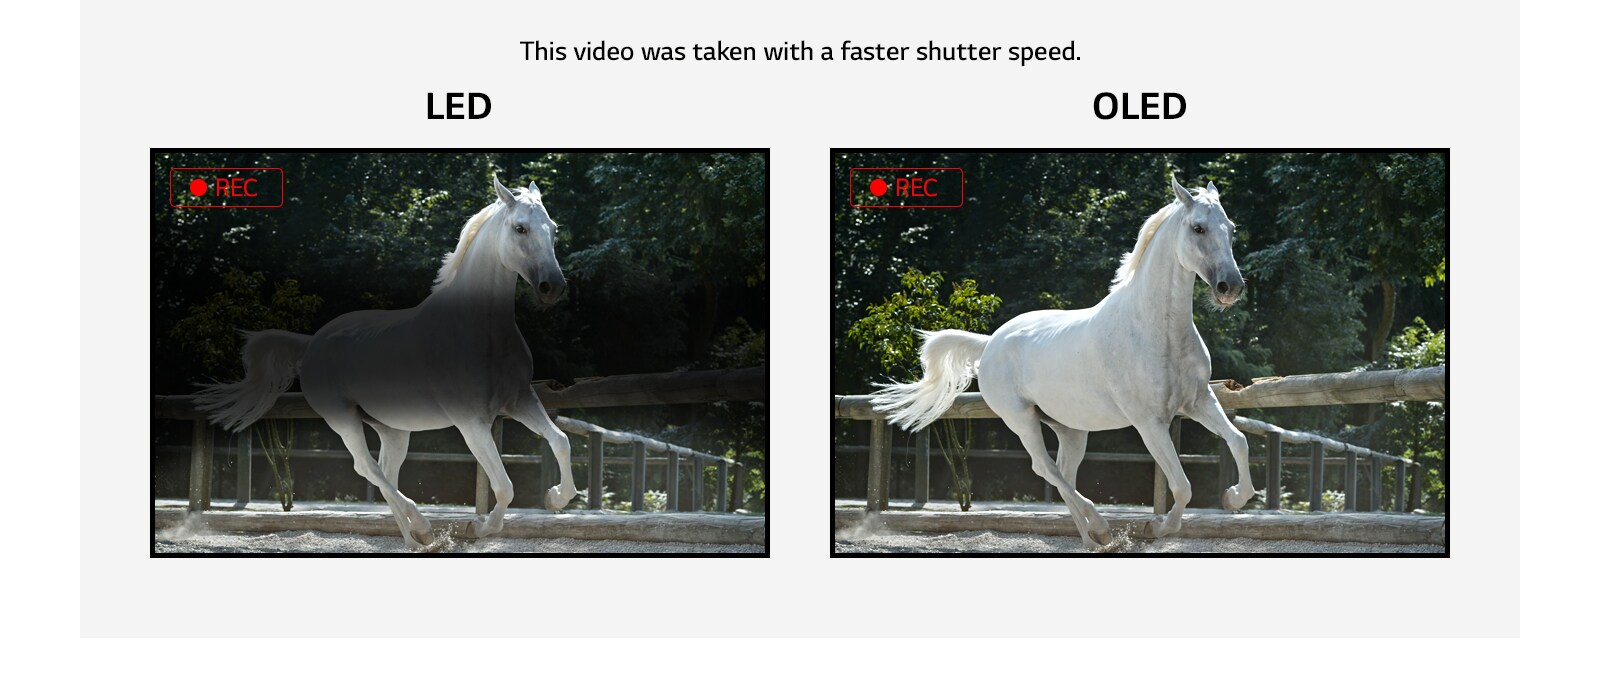 مقارنة بين وميض شاشات LED التي تصدر بعض الوميض وشاشات OLED الخالية من الوميض أثناء عرض فيديو لحصان أبيض أثناء انطلاقه. (تشغيل الفيديو)